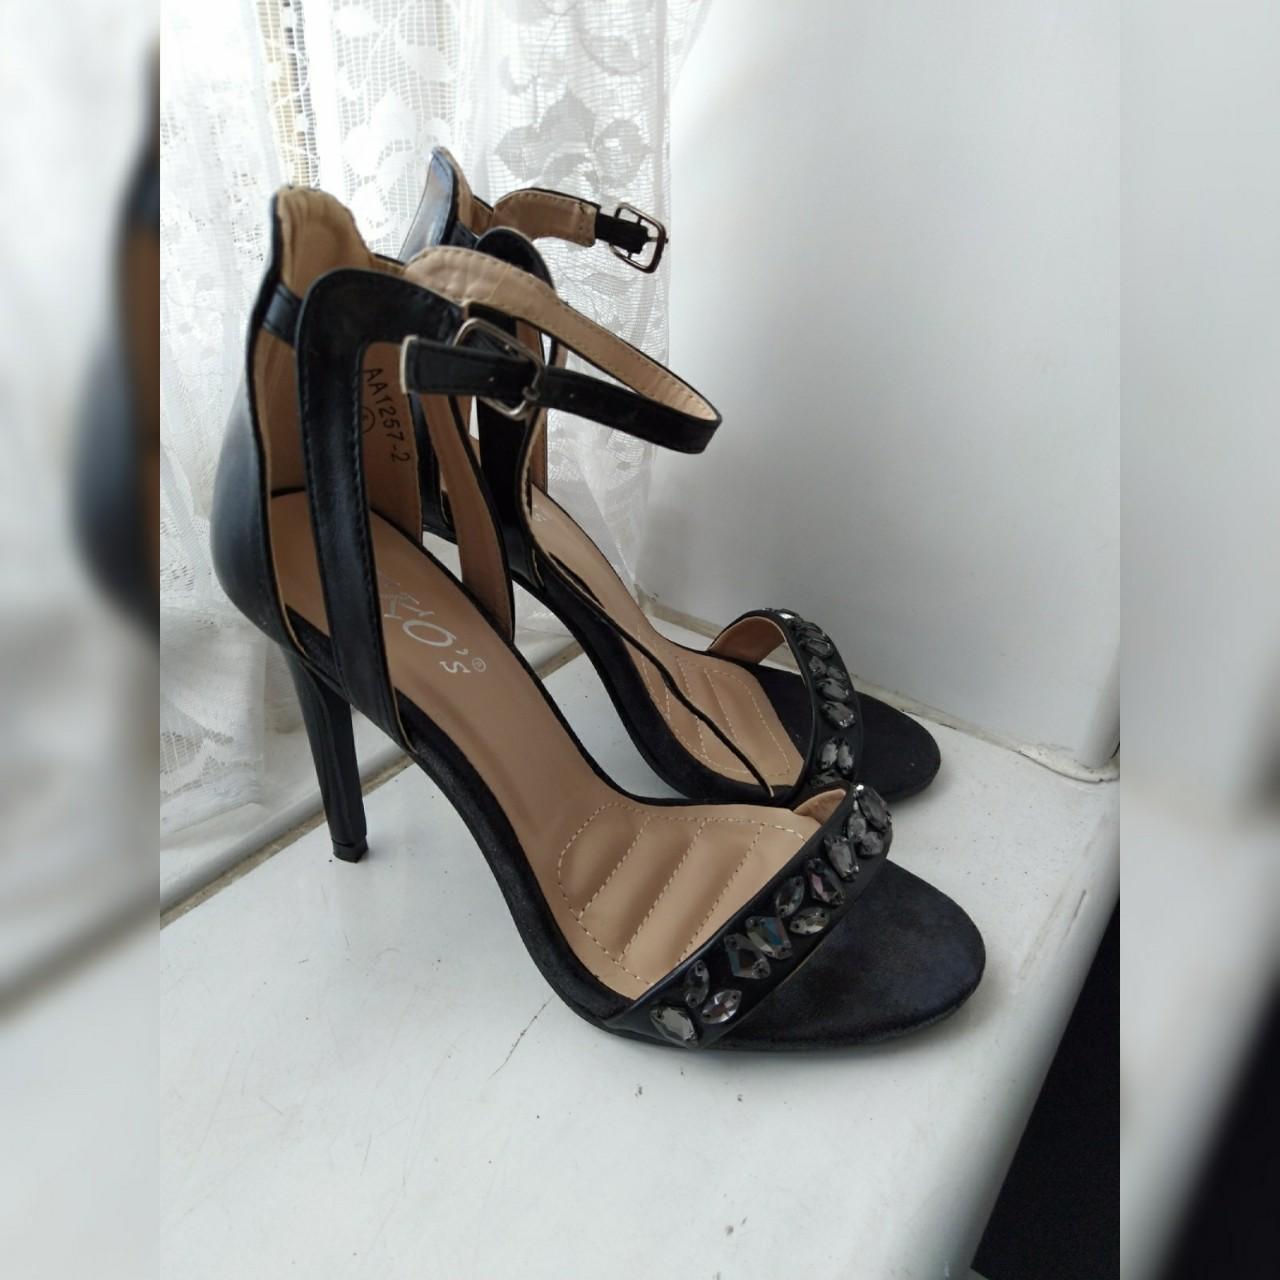 BLACK STILETTOS • Back stiletto heels - applique... - Depop